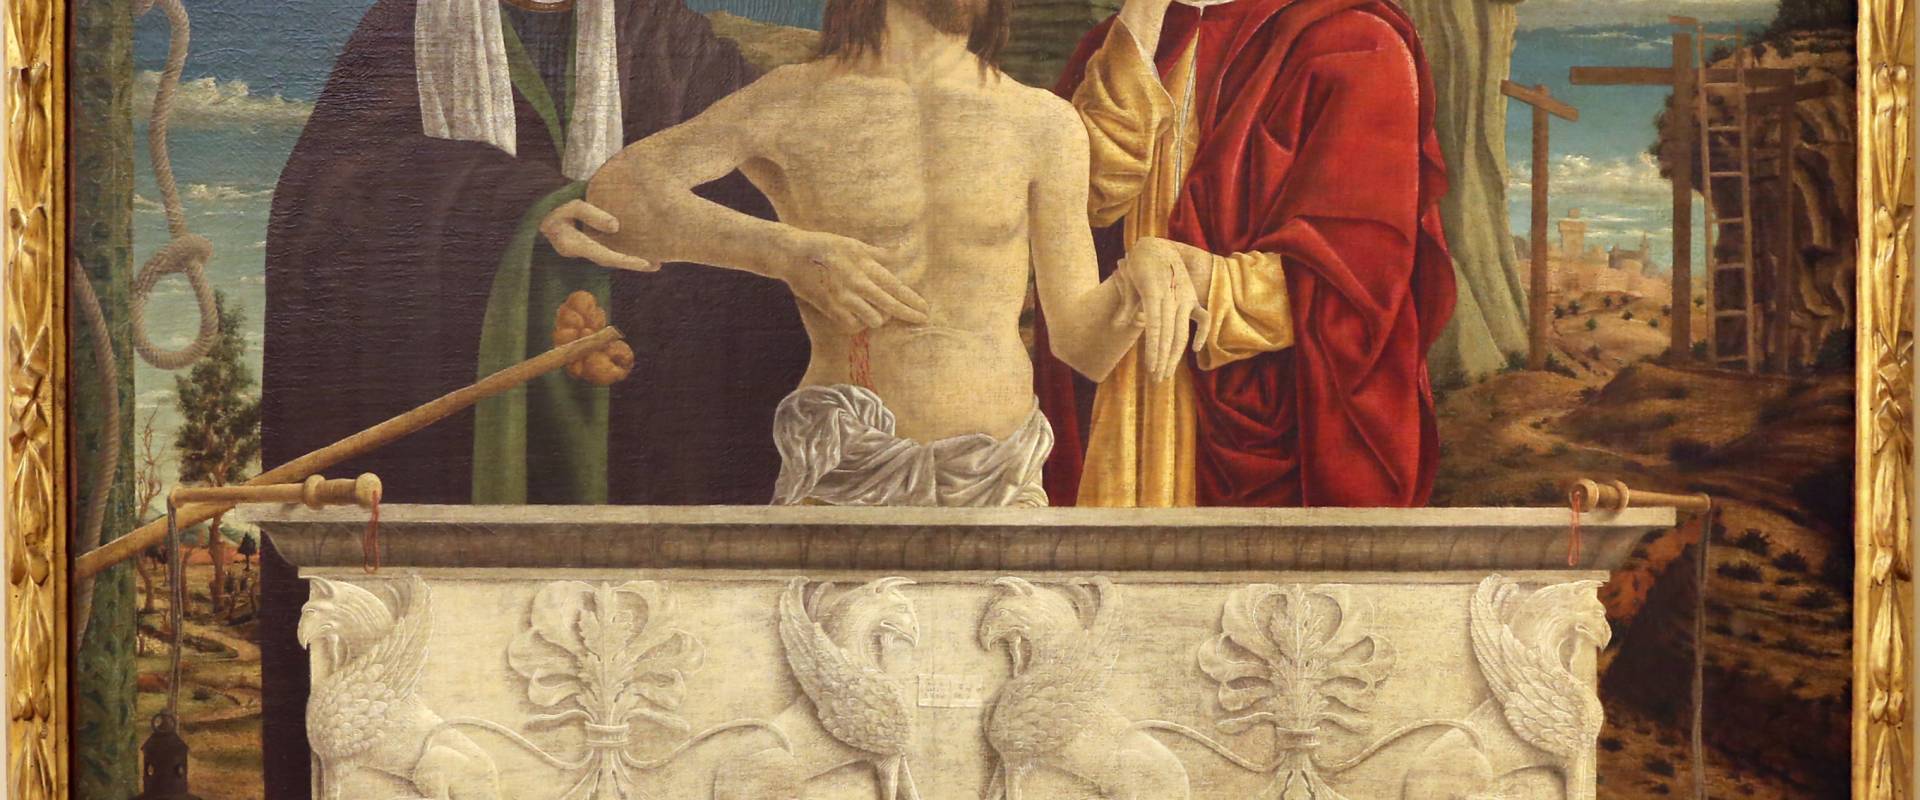 Bartolomeo bonascia, pietà, 1475-95 ca. 01 photo by Sailko